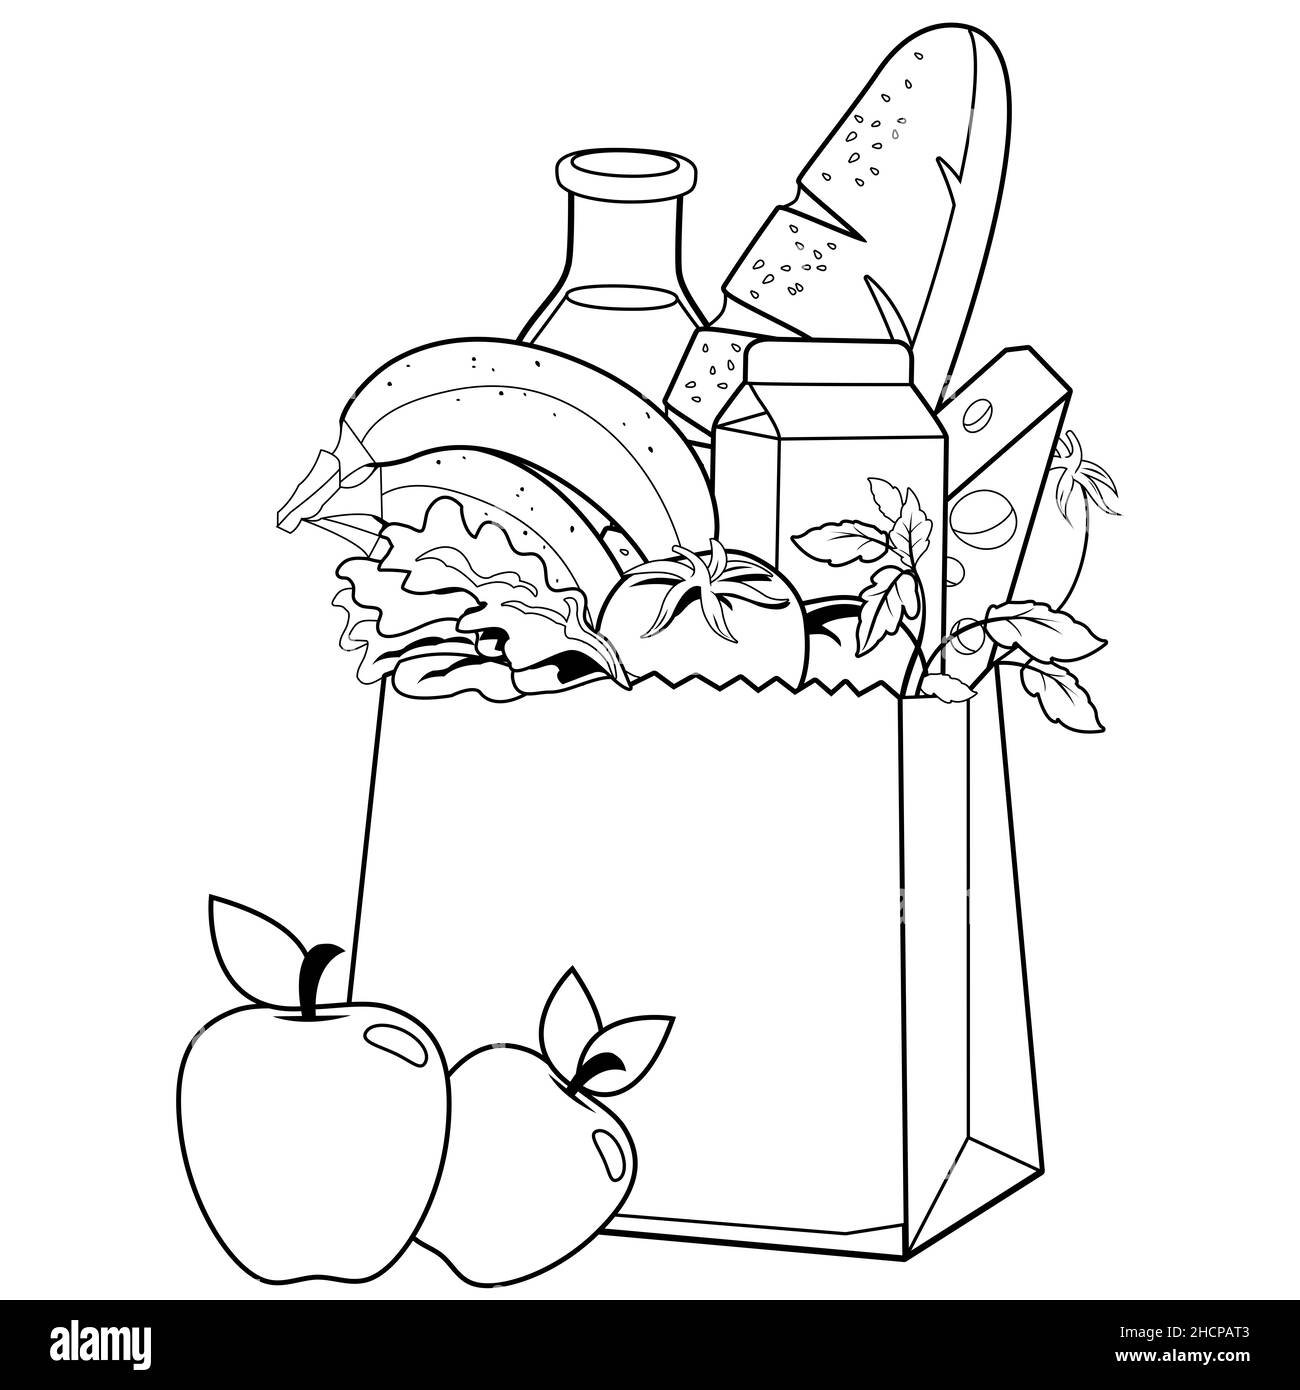 Sac en papier avec articles d'épicerie.Lait, pain, fruits, légumes et fromage.Page de couleur noir et blanc. Banque D'Images